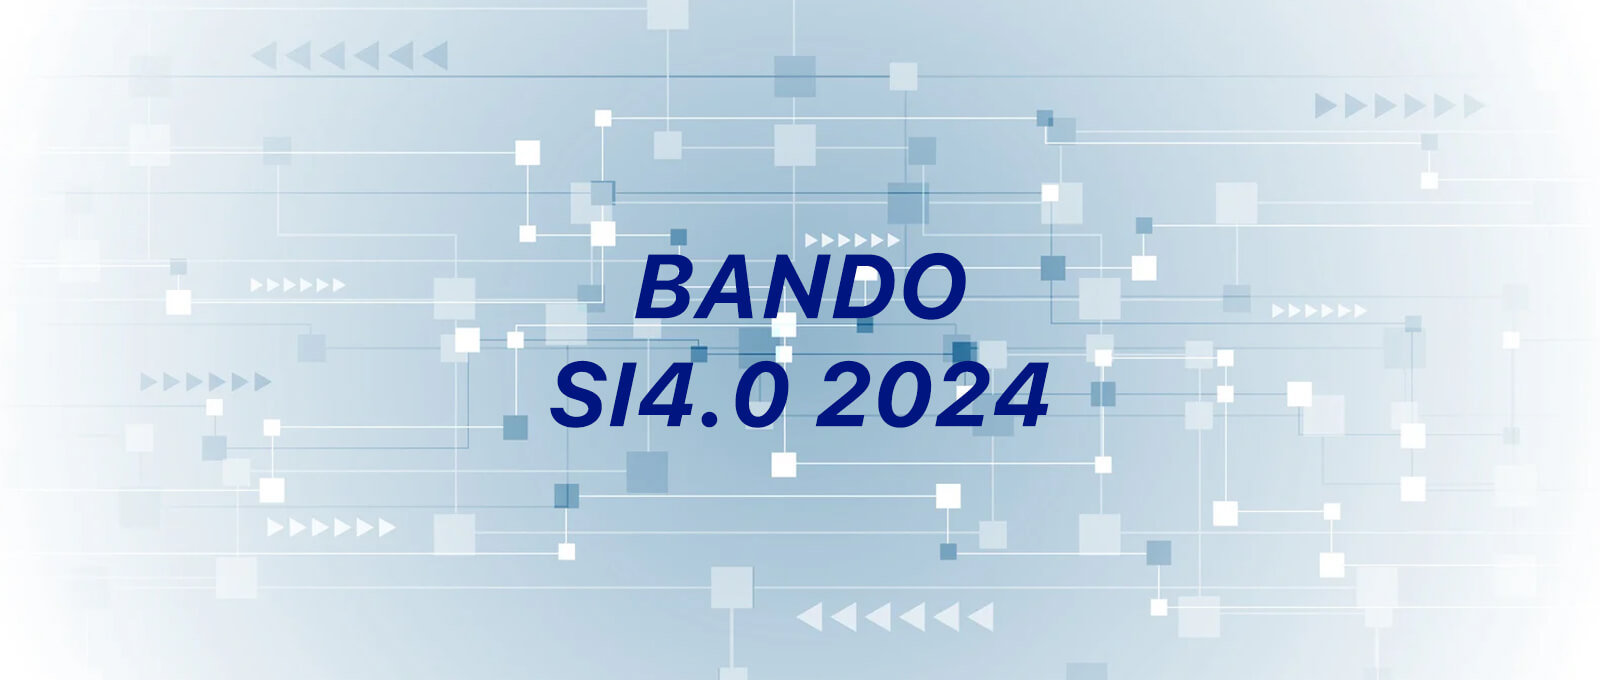 Progetti IoT con IoTReady per il bando SI4.0 2024